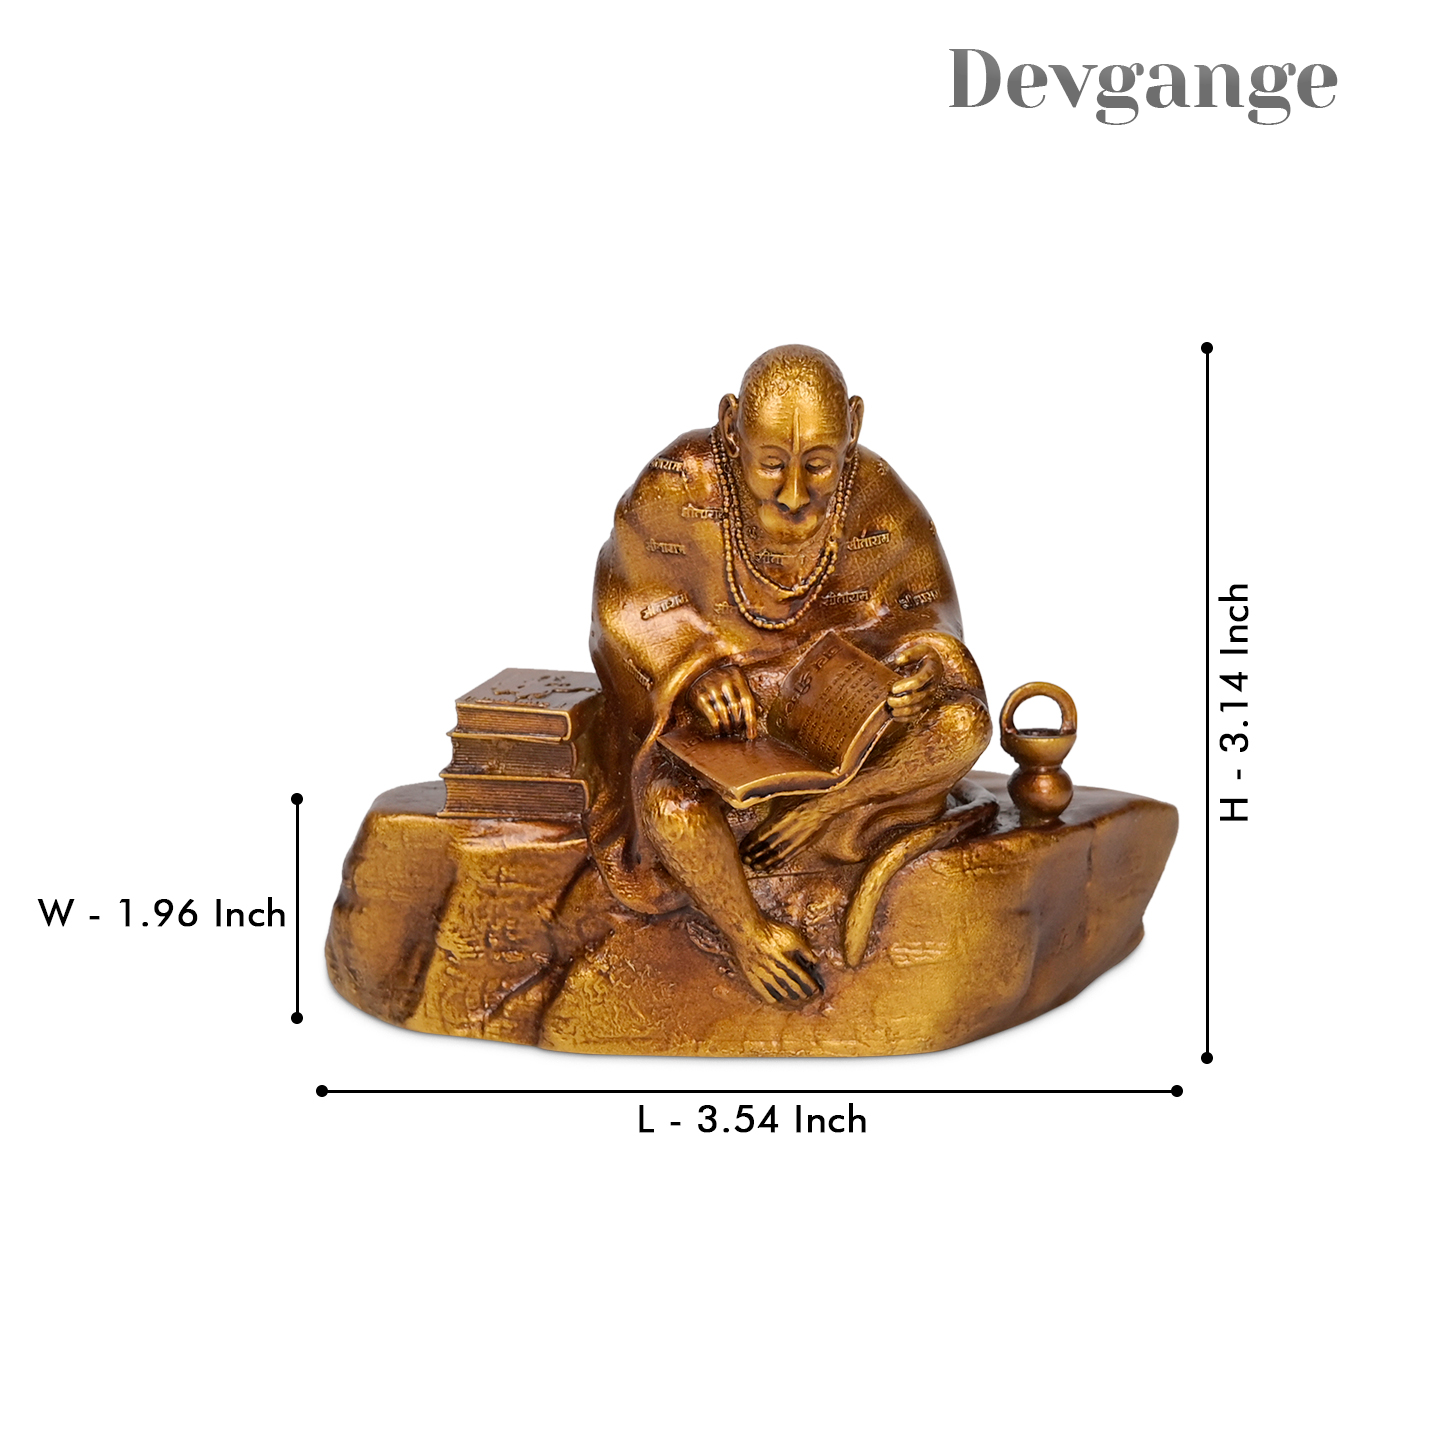 Ramayan Hanuman ji